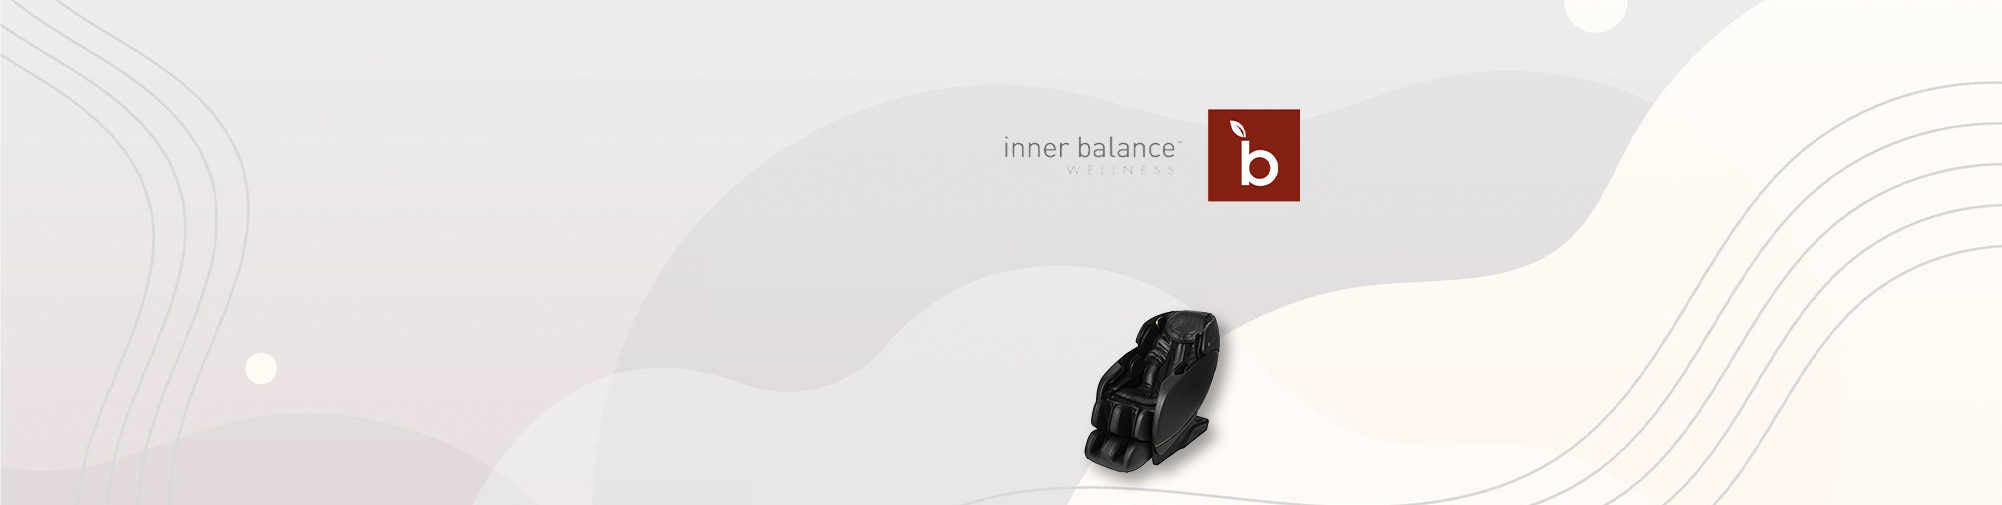 Inner Balance - отличное производство массажных кресел | Massagesessel Welt